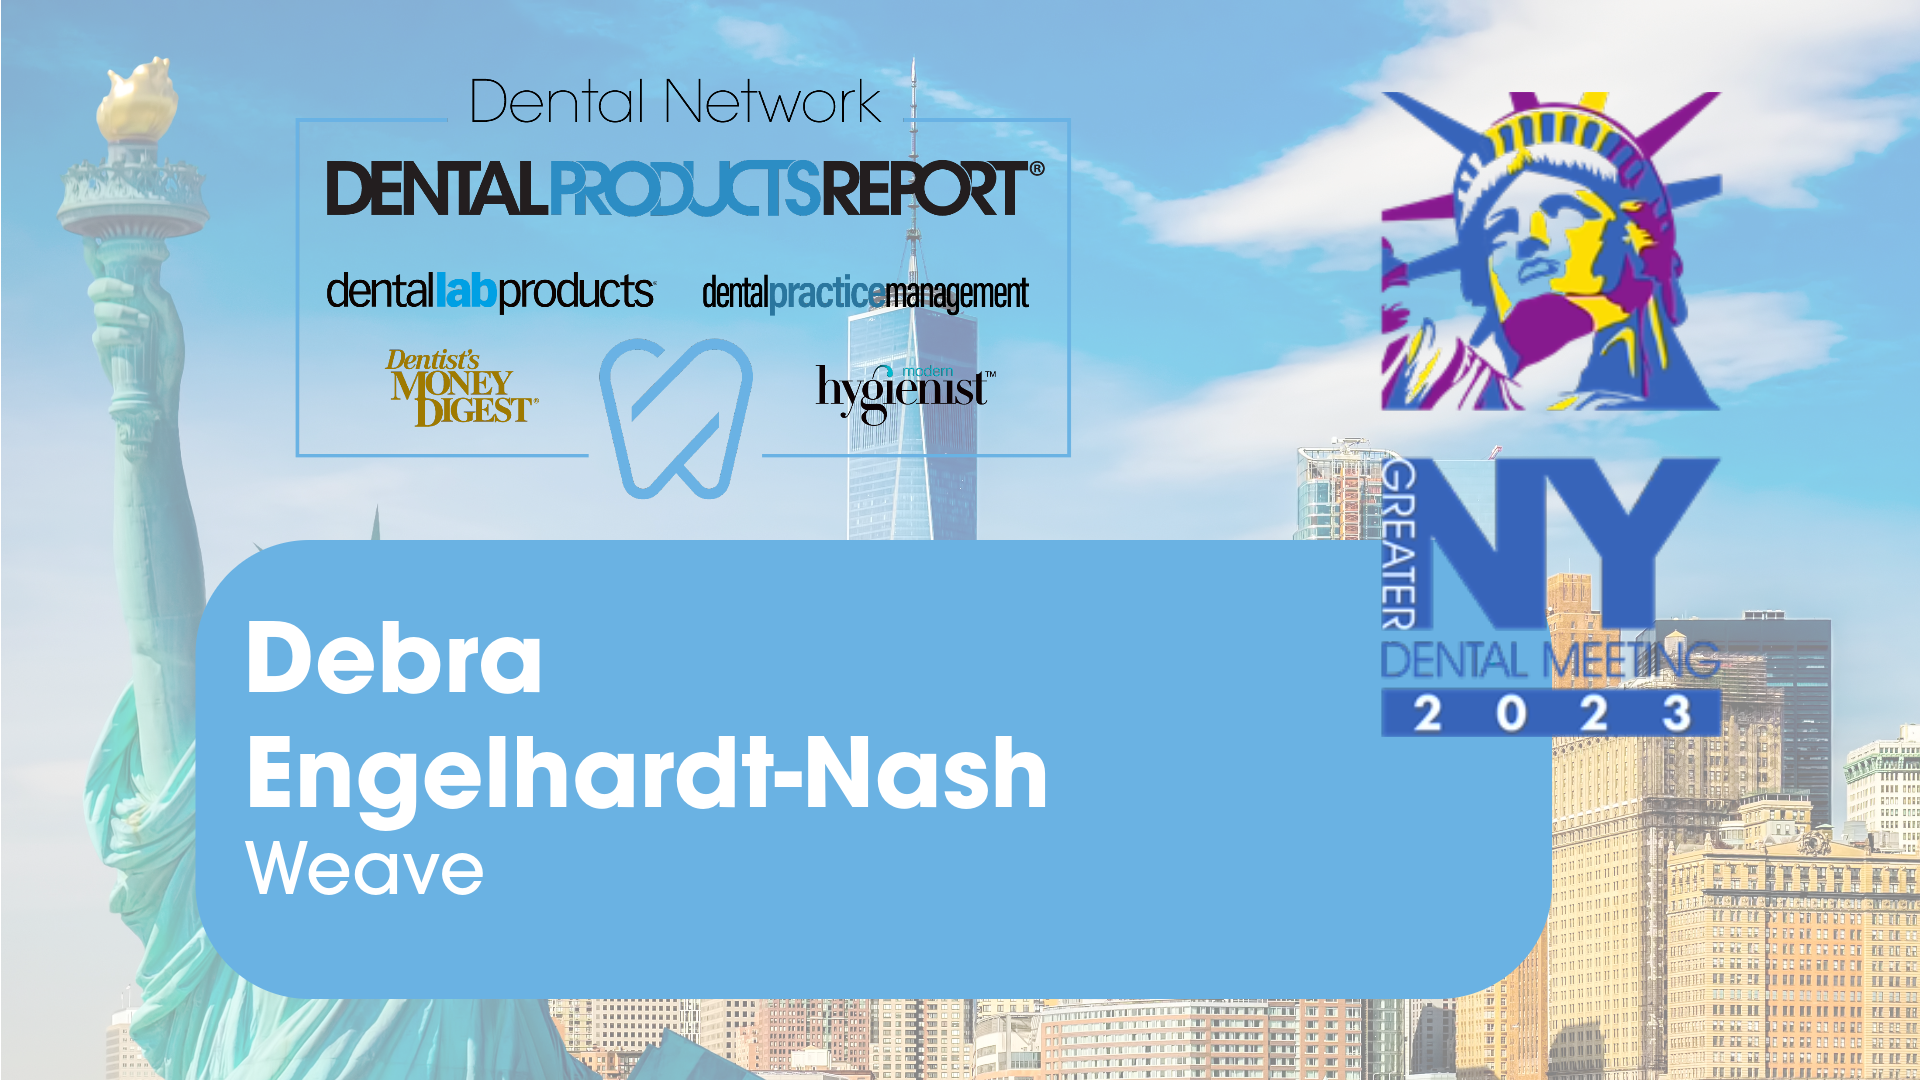 Greater New York Dental Meeting 2023 - Debra Engelhardt-Nash